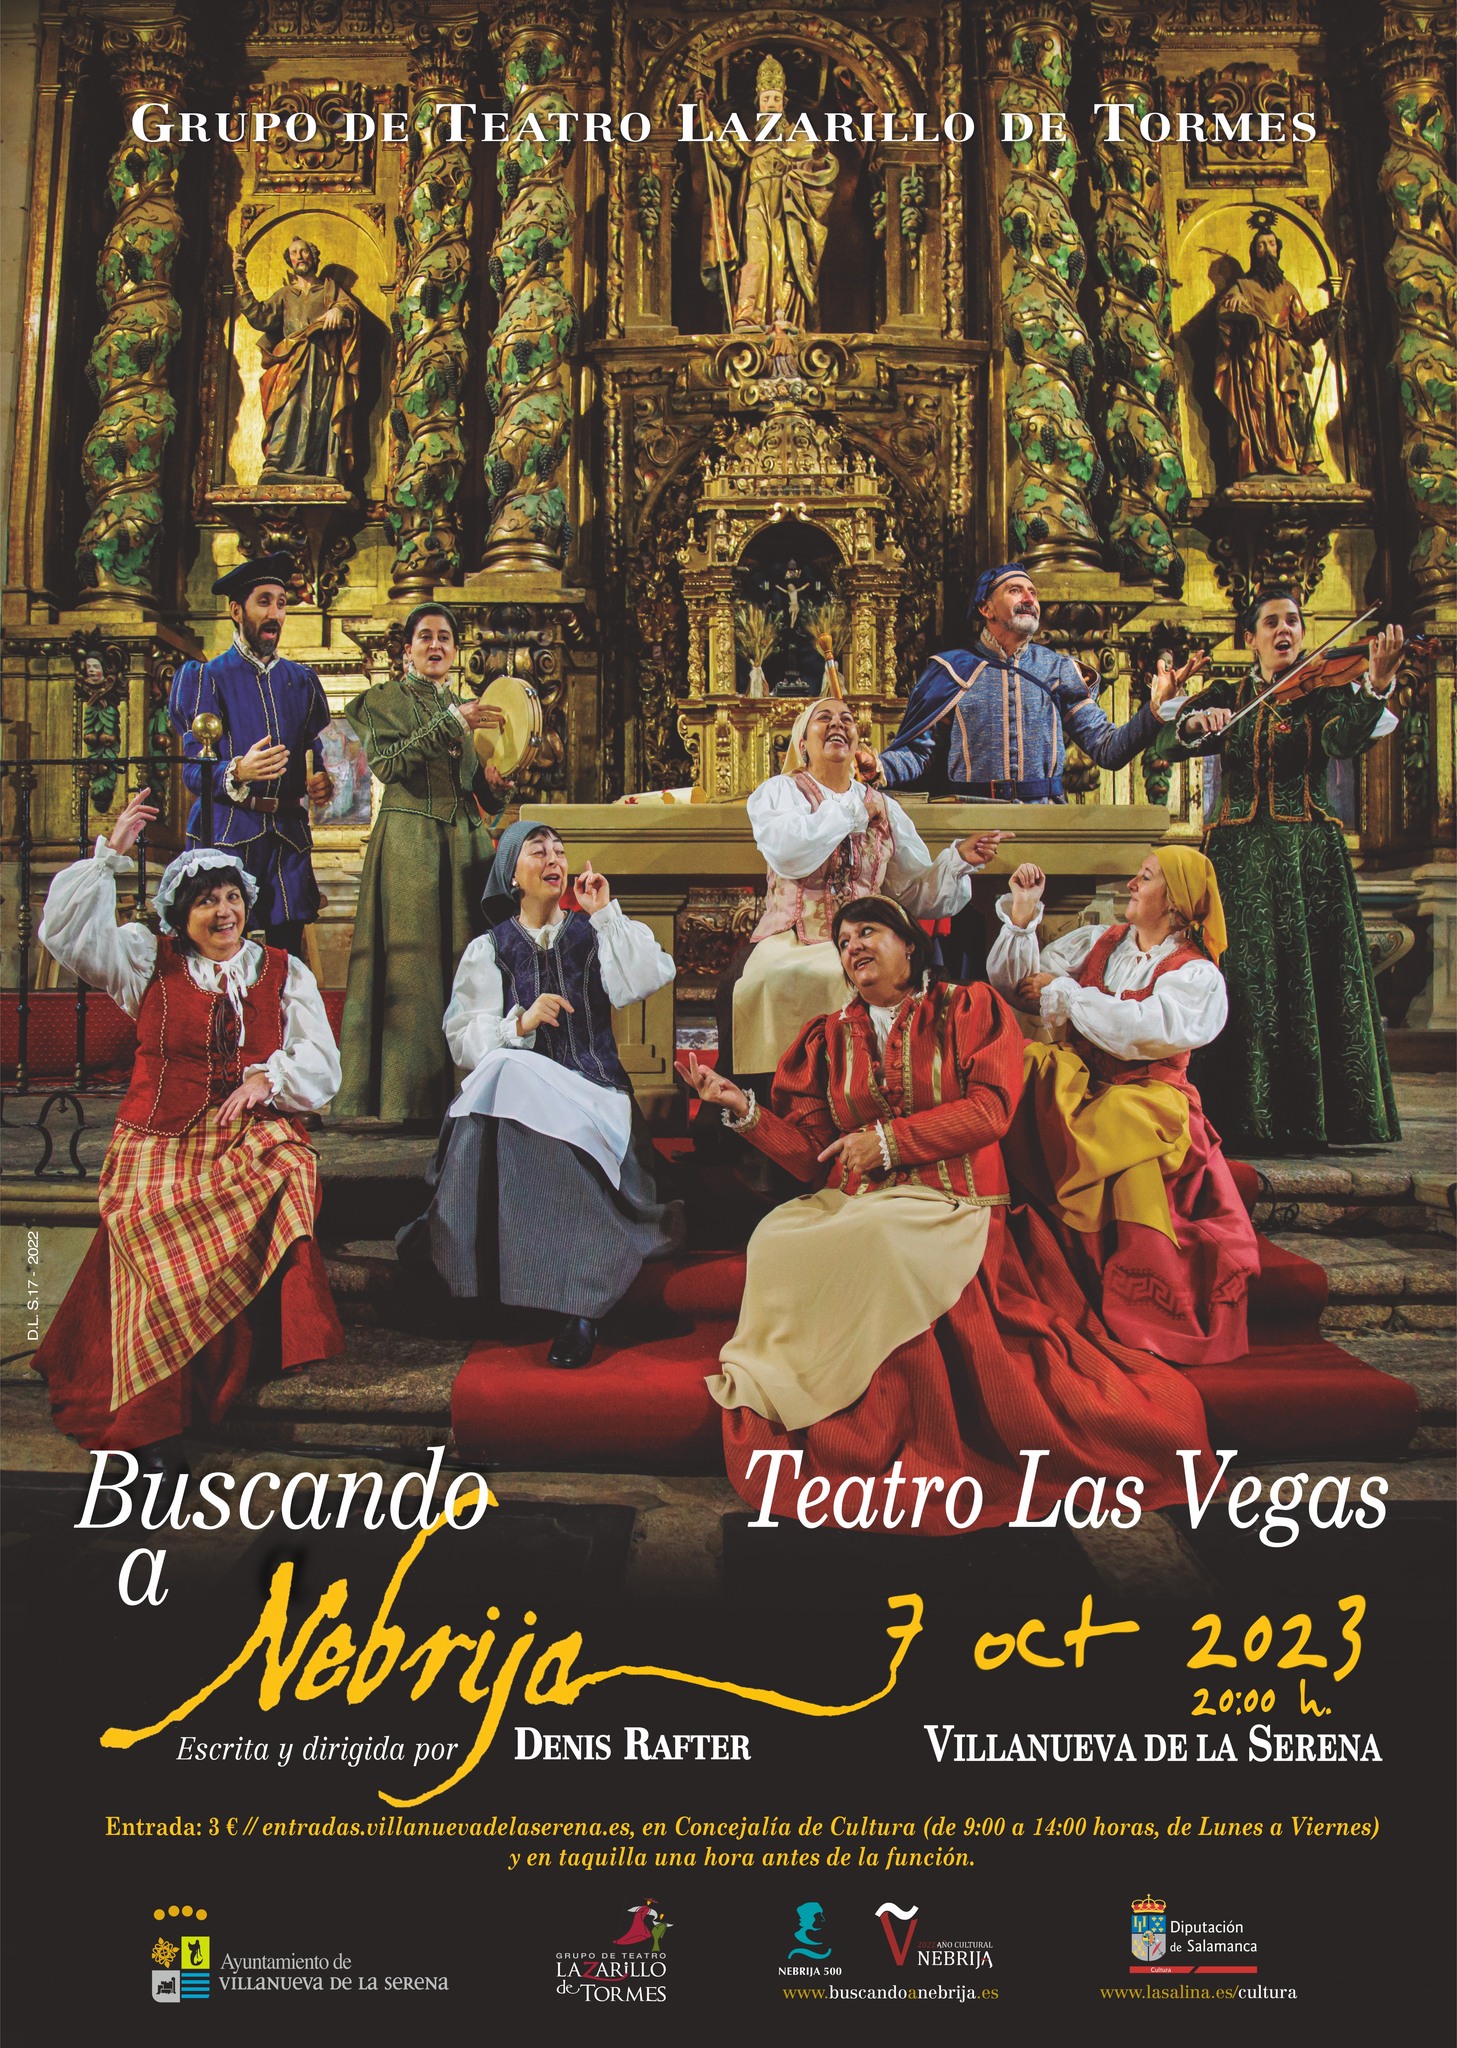 Teatro 'Buscando a Nebrija' Escrita y dirigida por Denis Rafter.